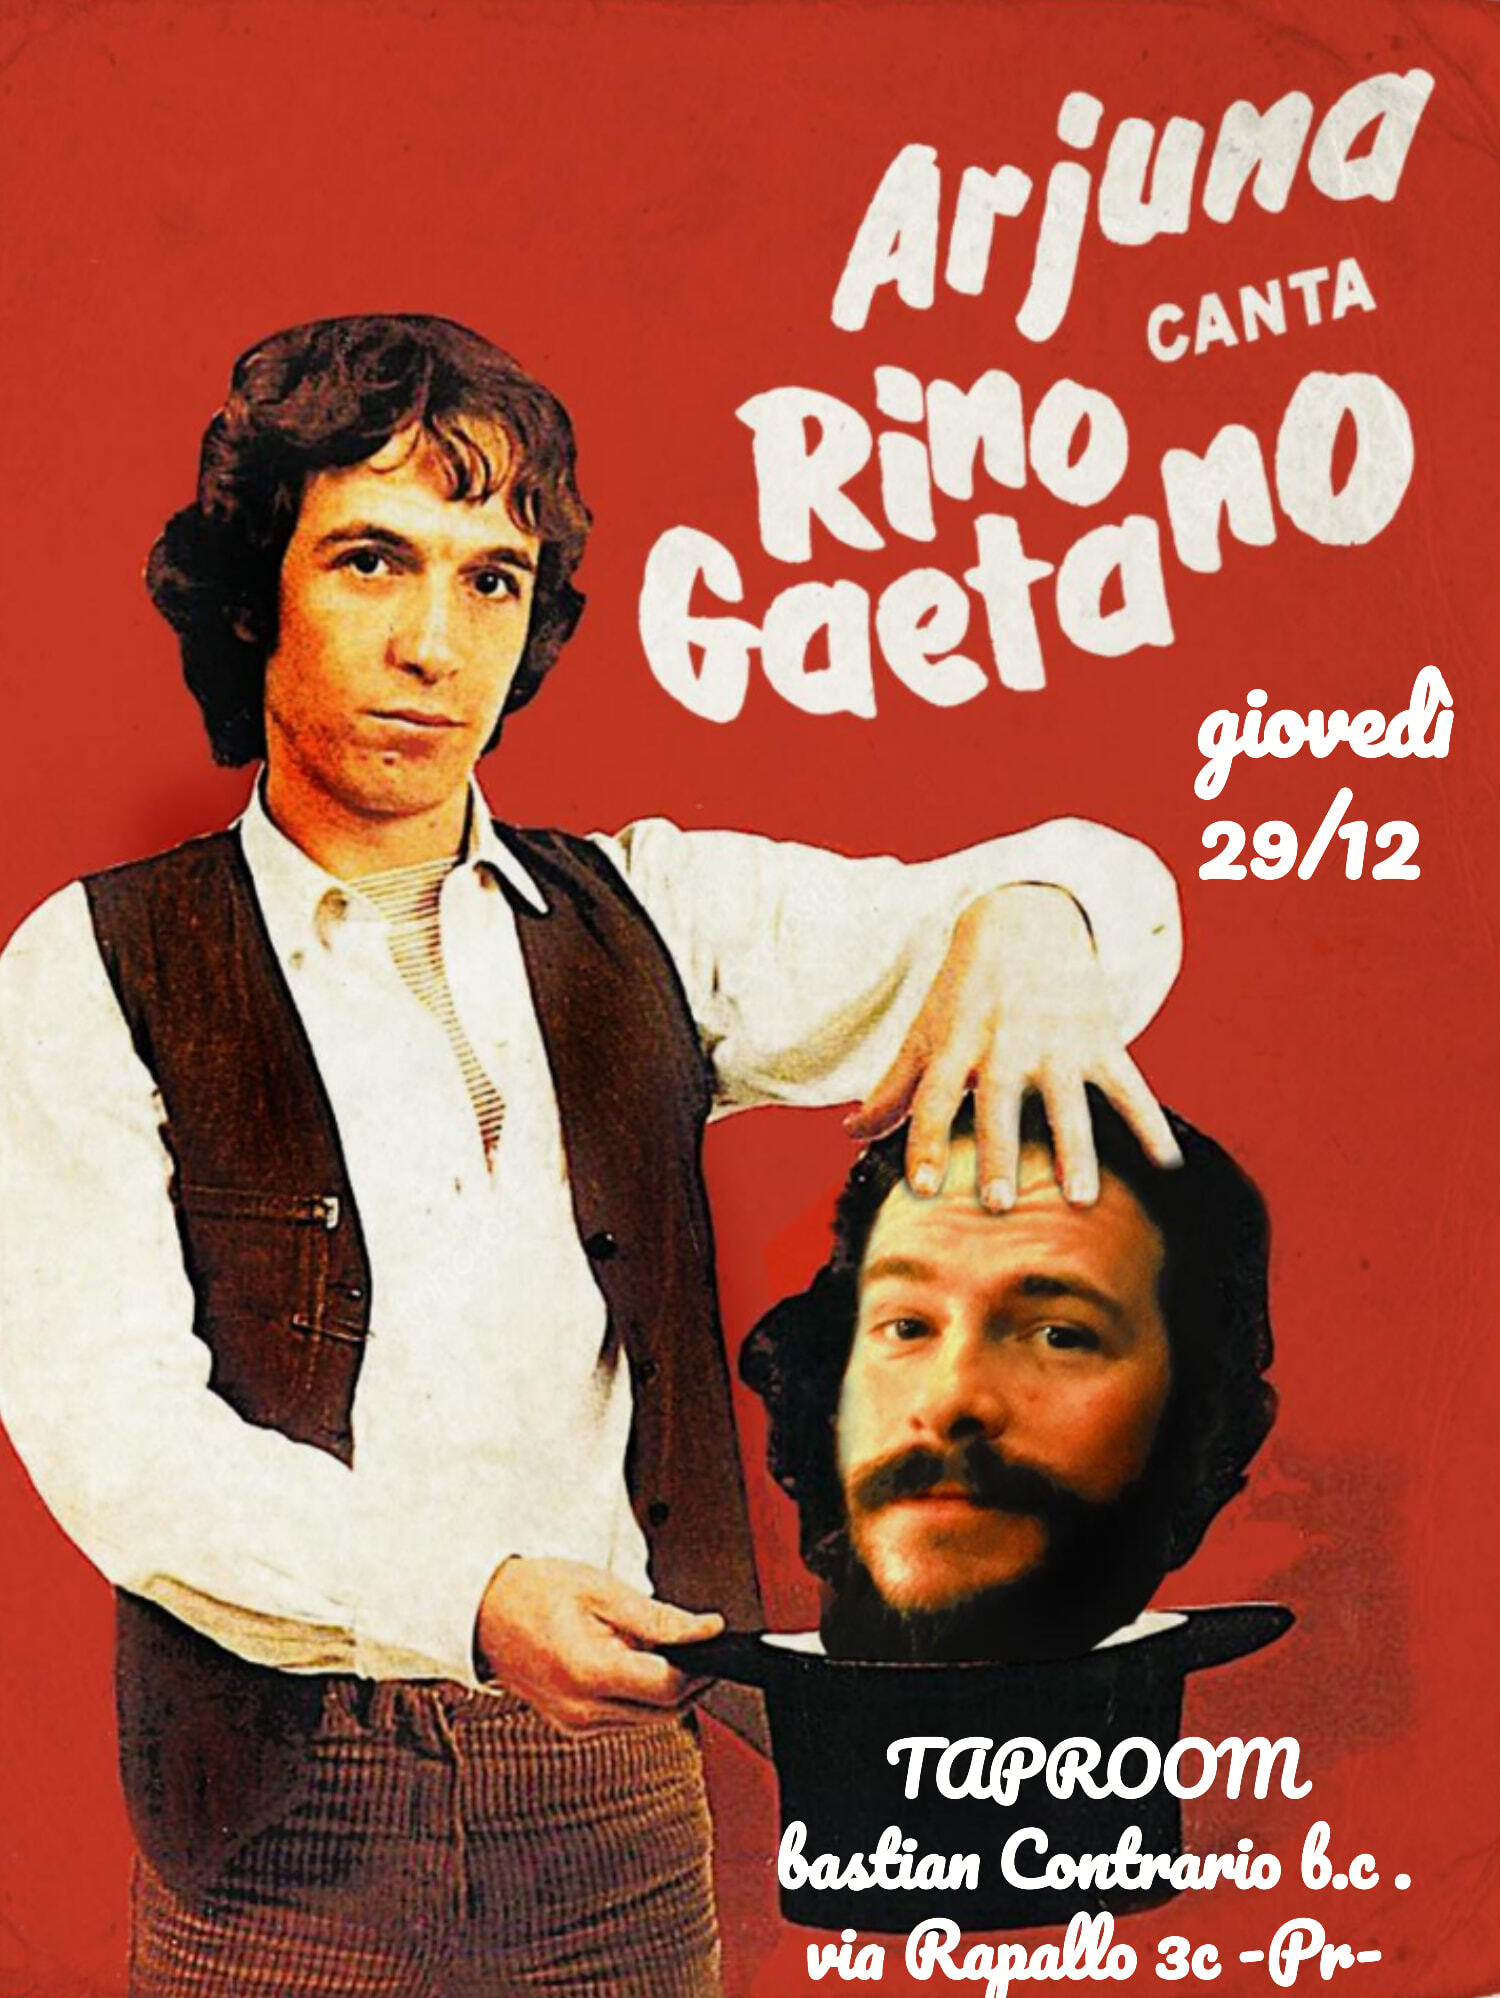 Al  Bastian Contrario Brewing Company giovedì è live music: Arjuna in Rino Gaetano